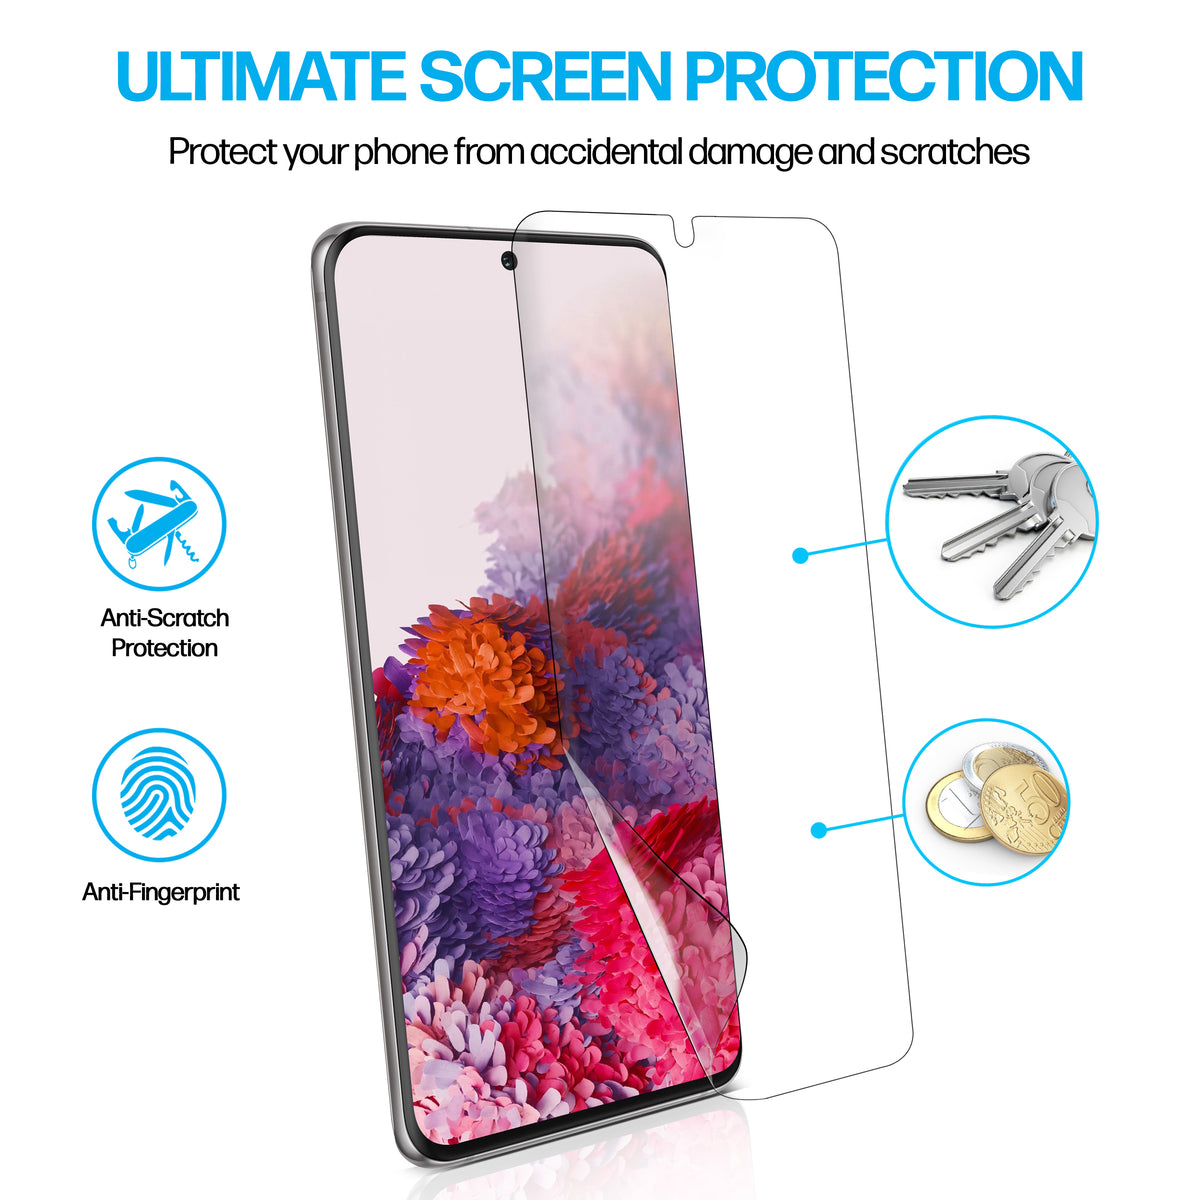 Samsung Galaxy S20 TPU Anti-Scratch Screen Protector Film [2-Pack